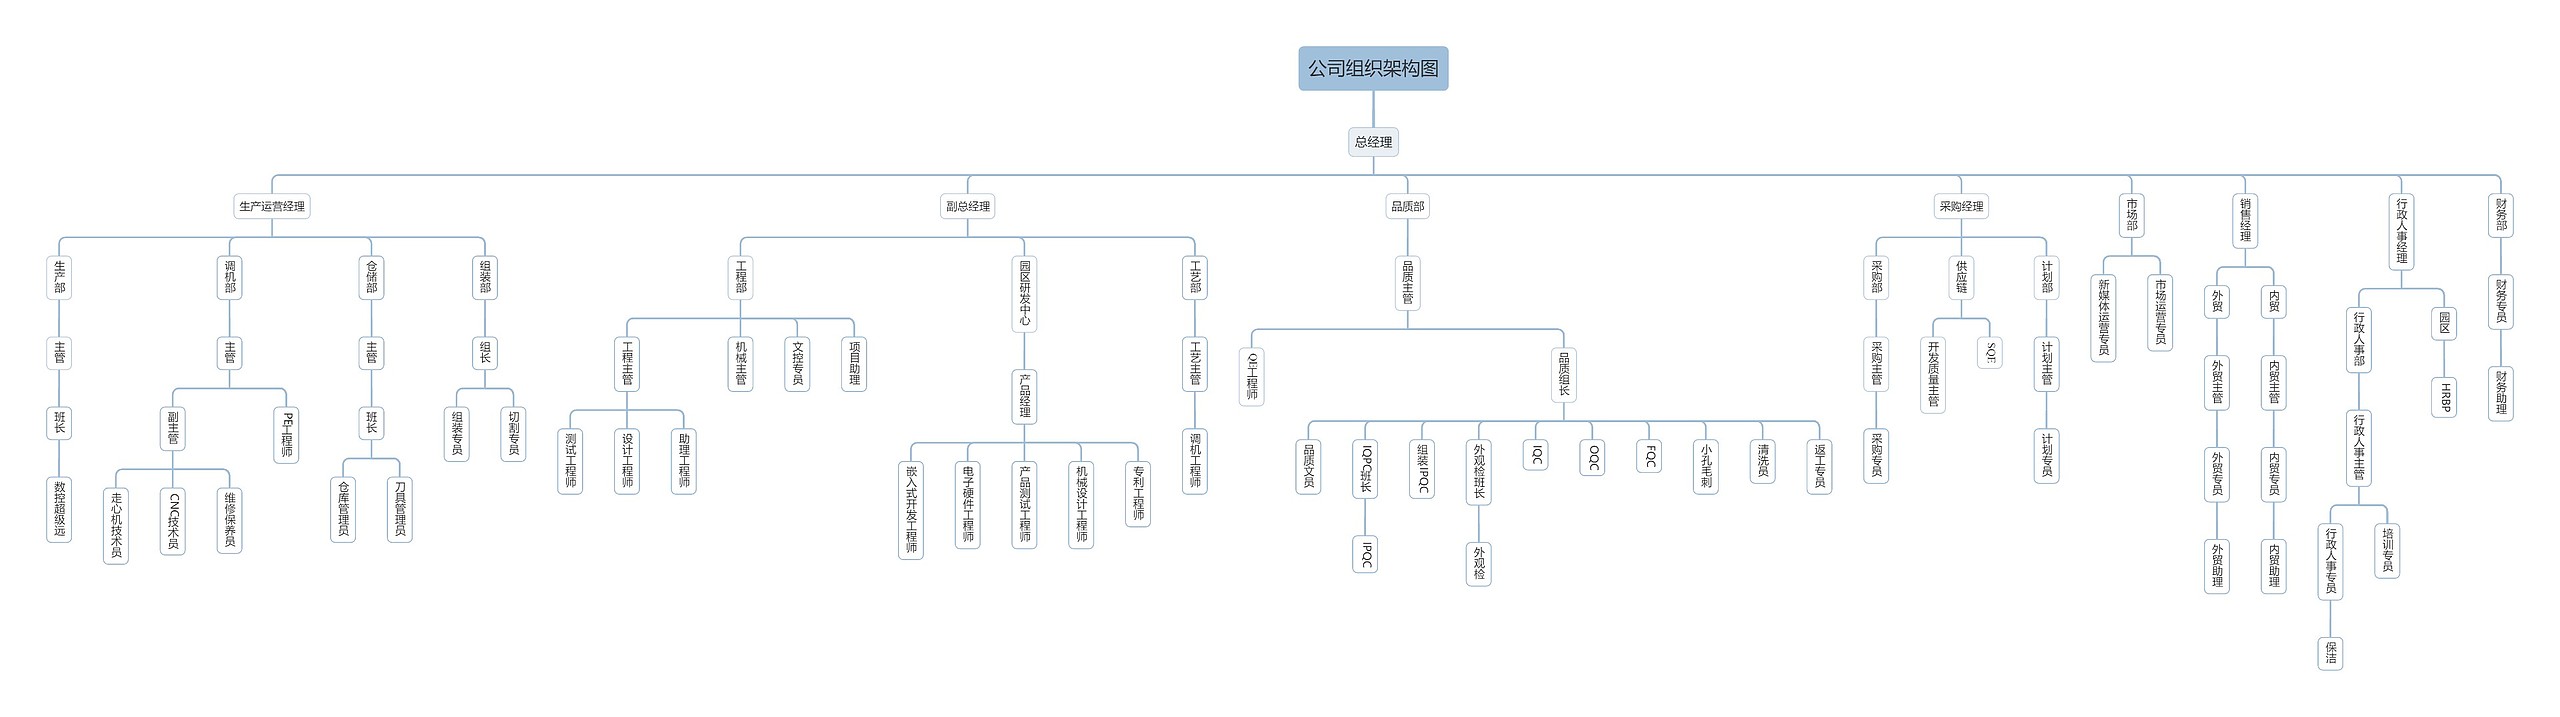 江苏锐力斯三维科技有限公司组织架构图